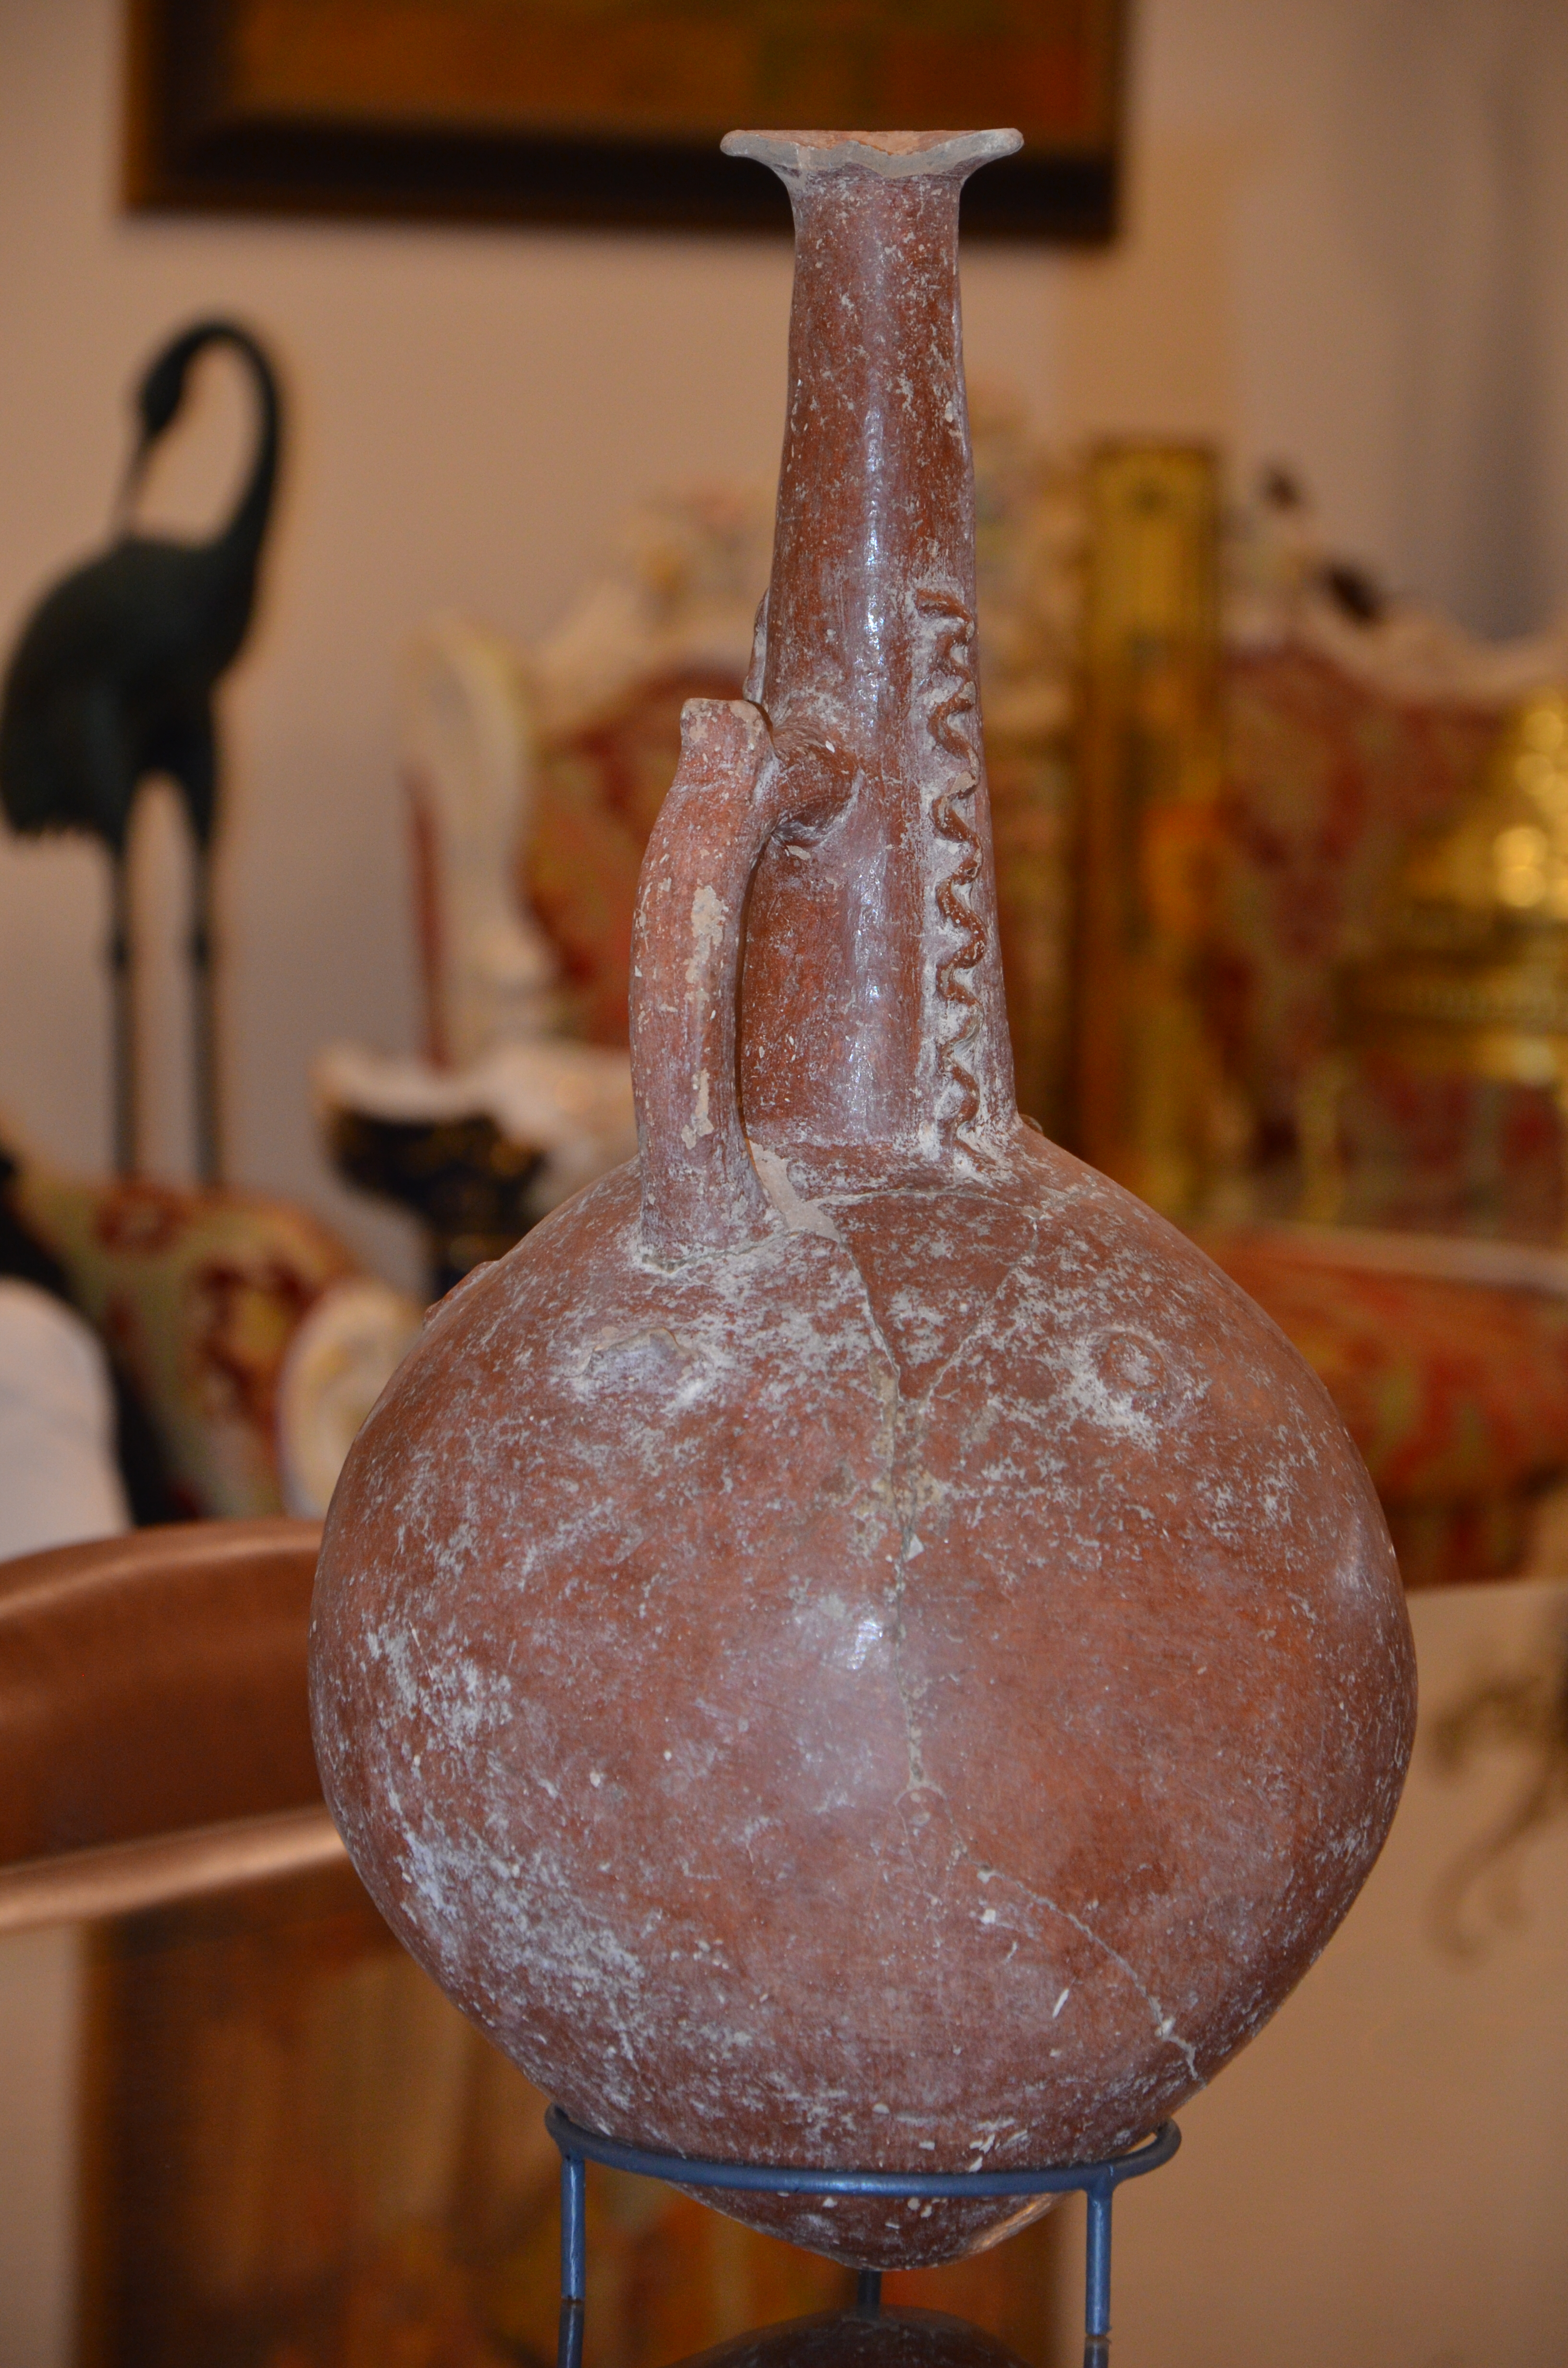 Σπάνιο αντικείμενο της Πρωτοκυπριακής κεραμικής, από το 2100-2000π.Χ. Χρησιμοποιούνταν ως κανάτα σερβιρίσματος κρασιού